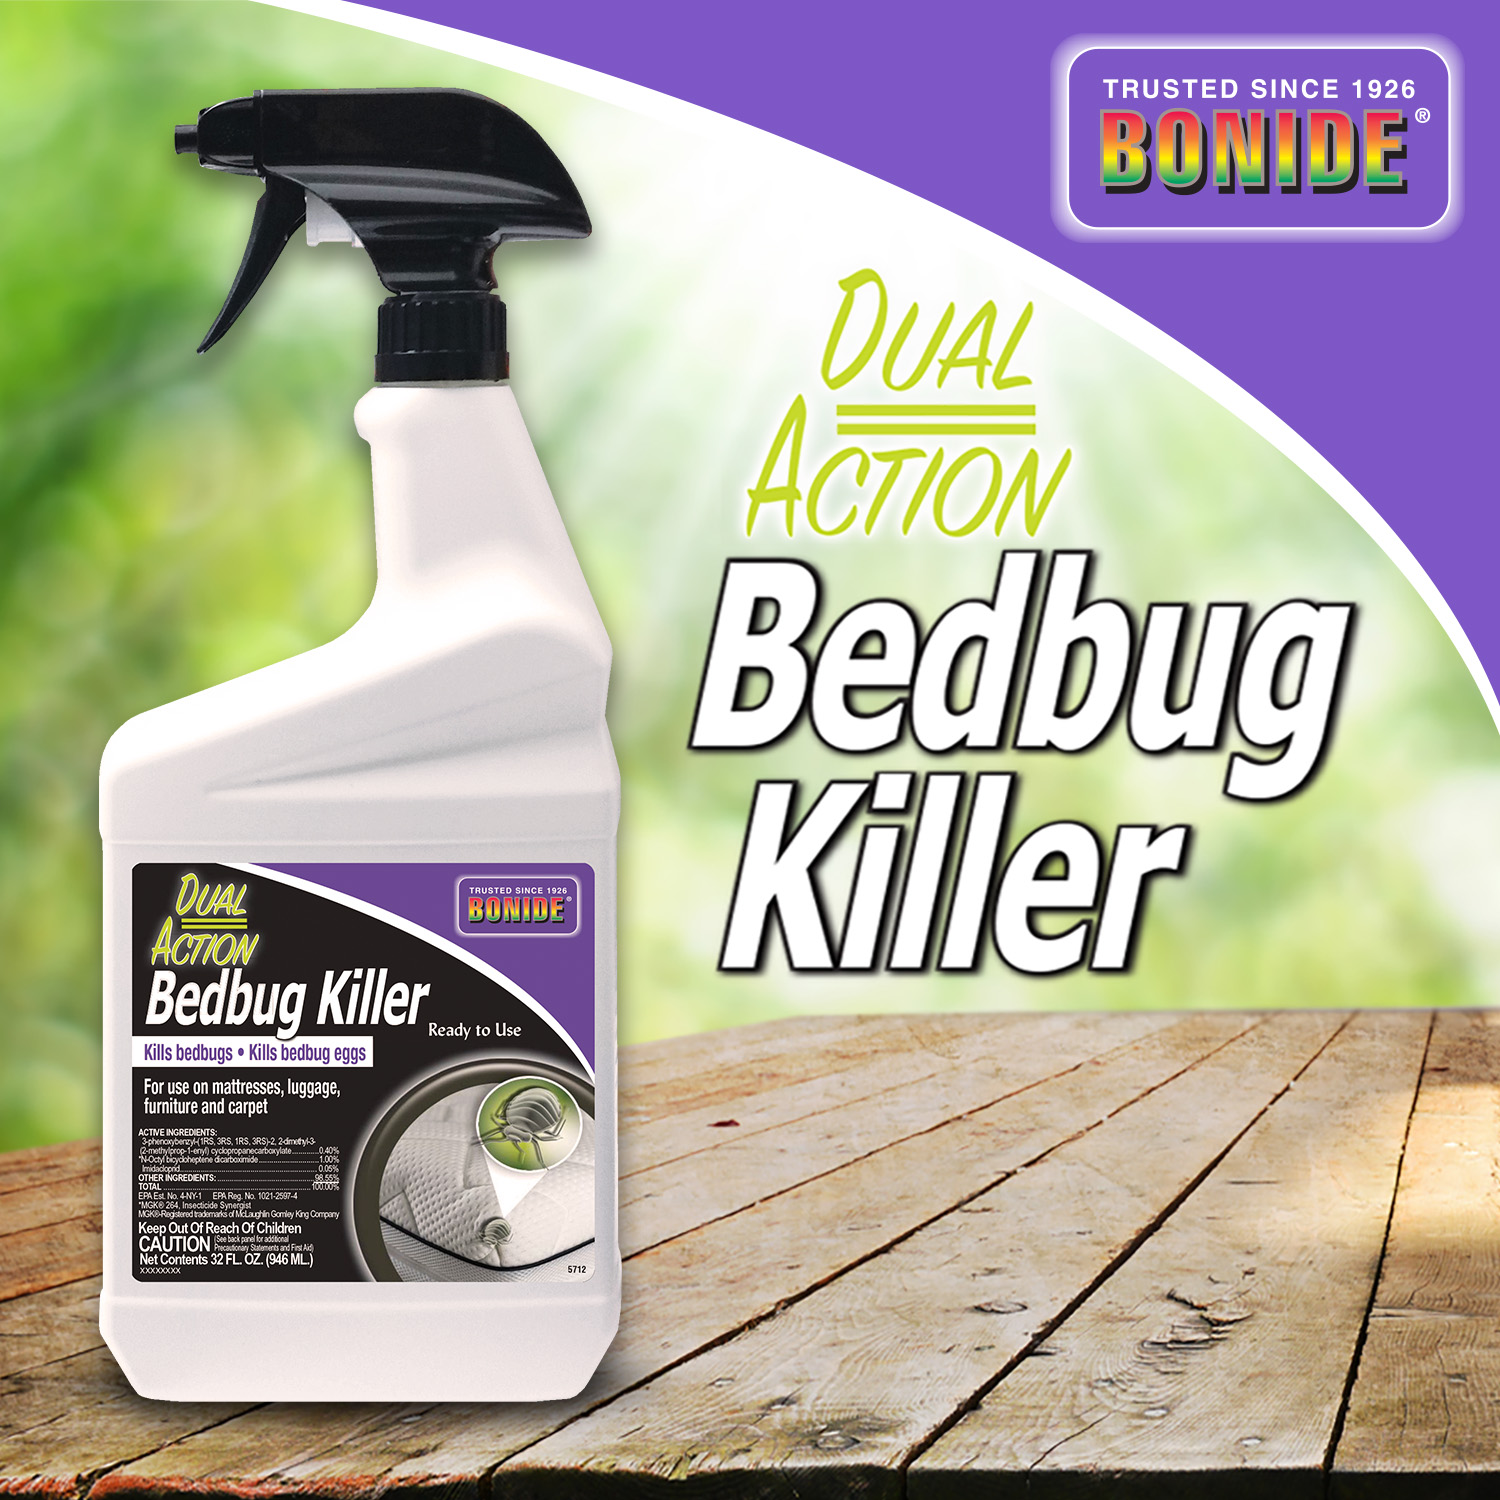 Dual Action Bedbug Killer